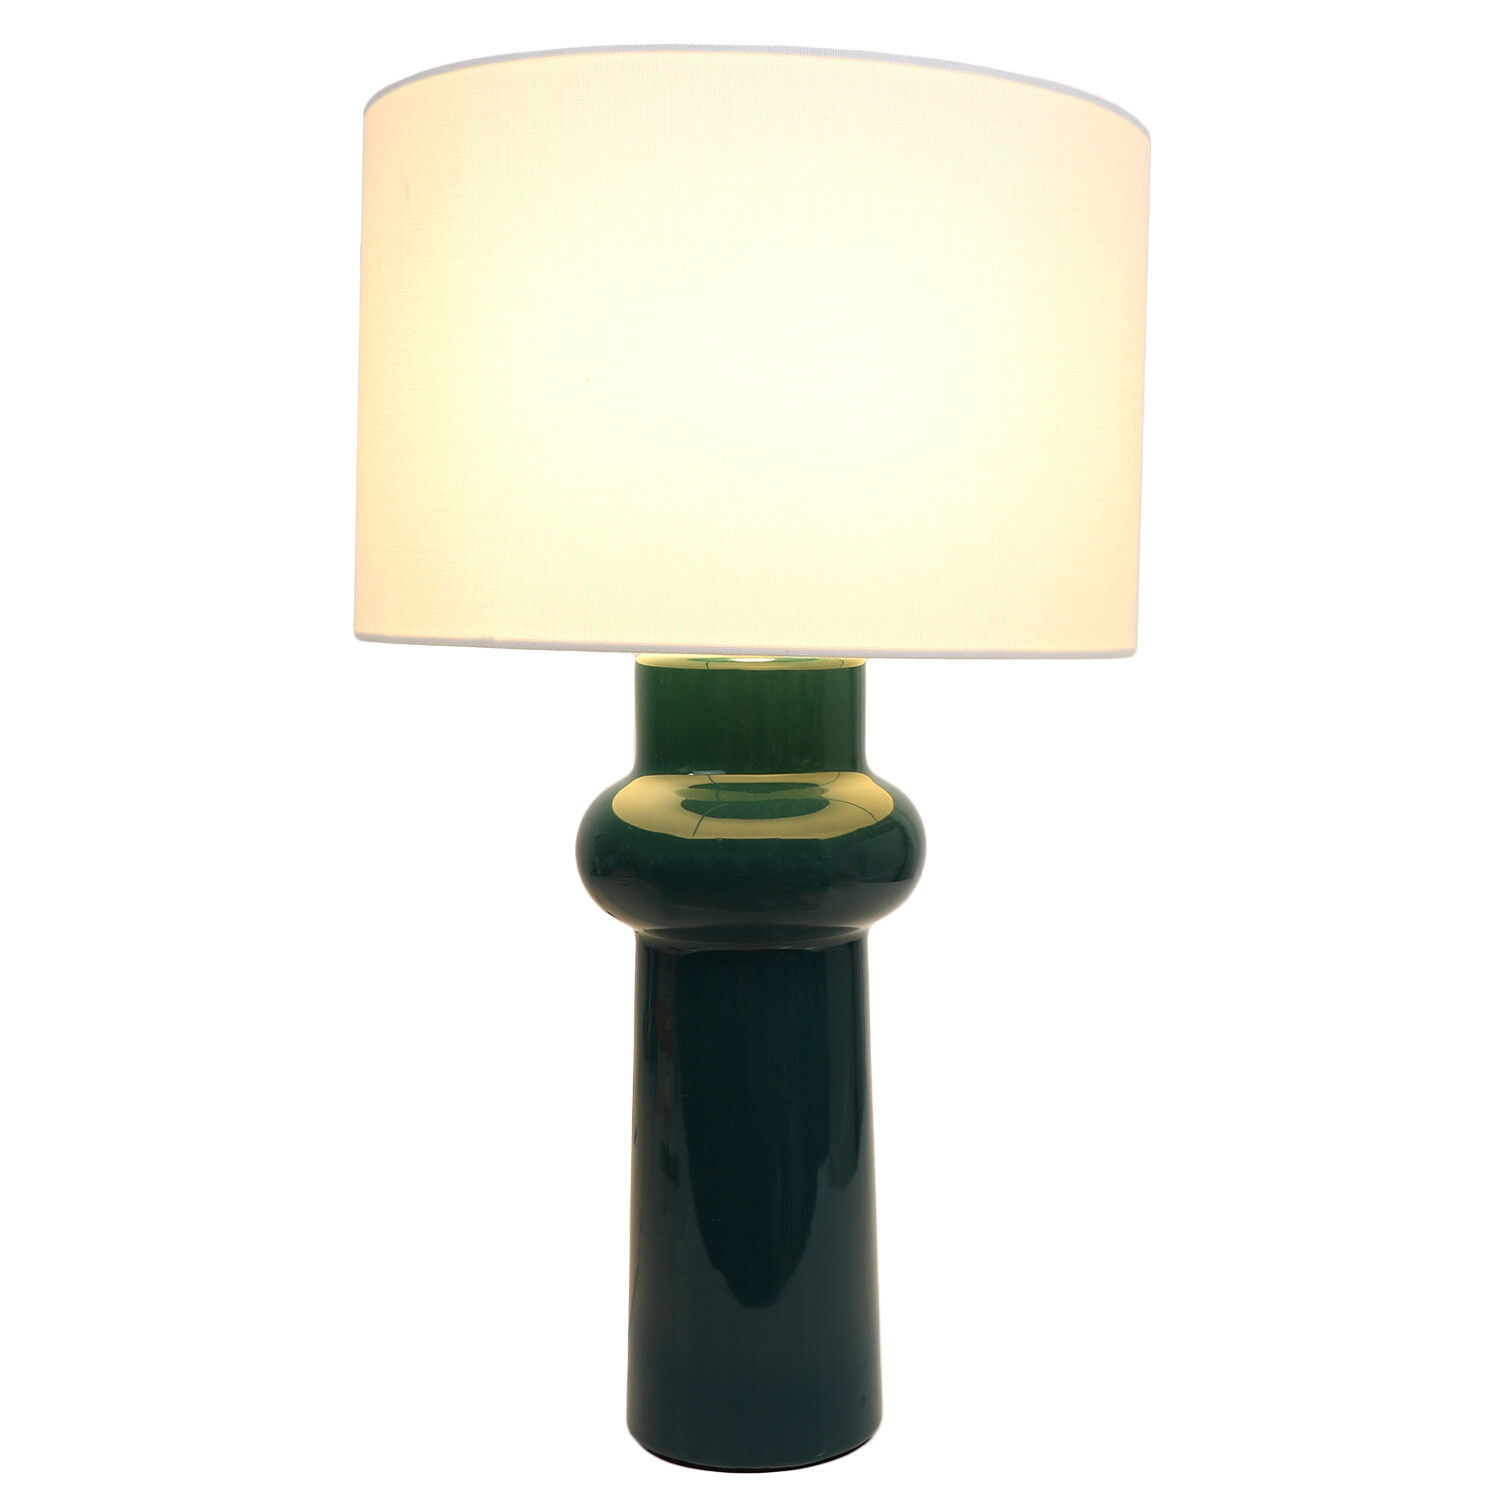 Atlantica Table Lamp - Teal Image 2